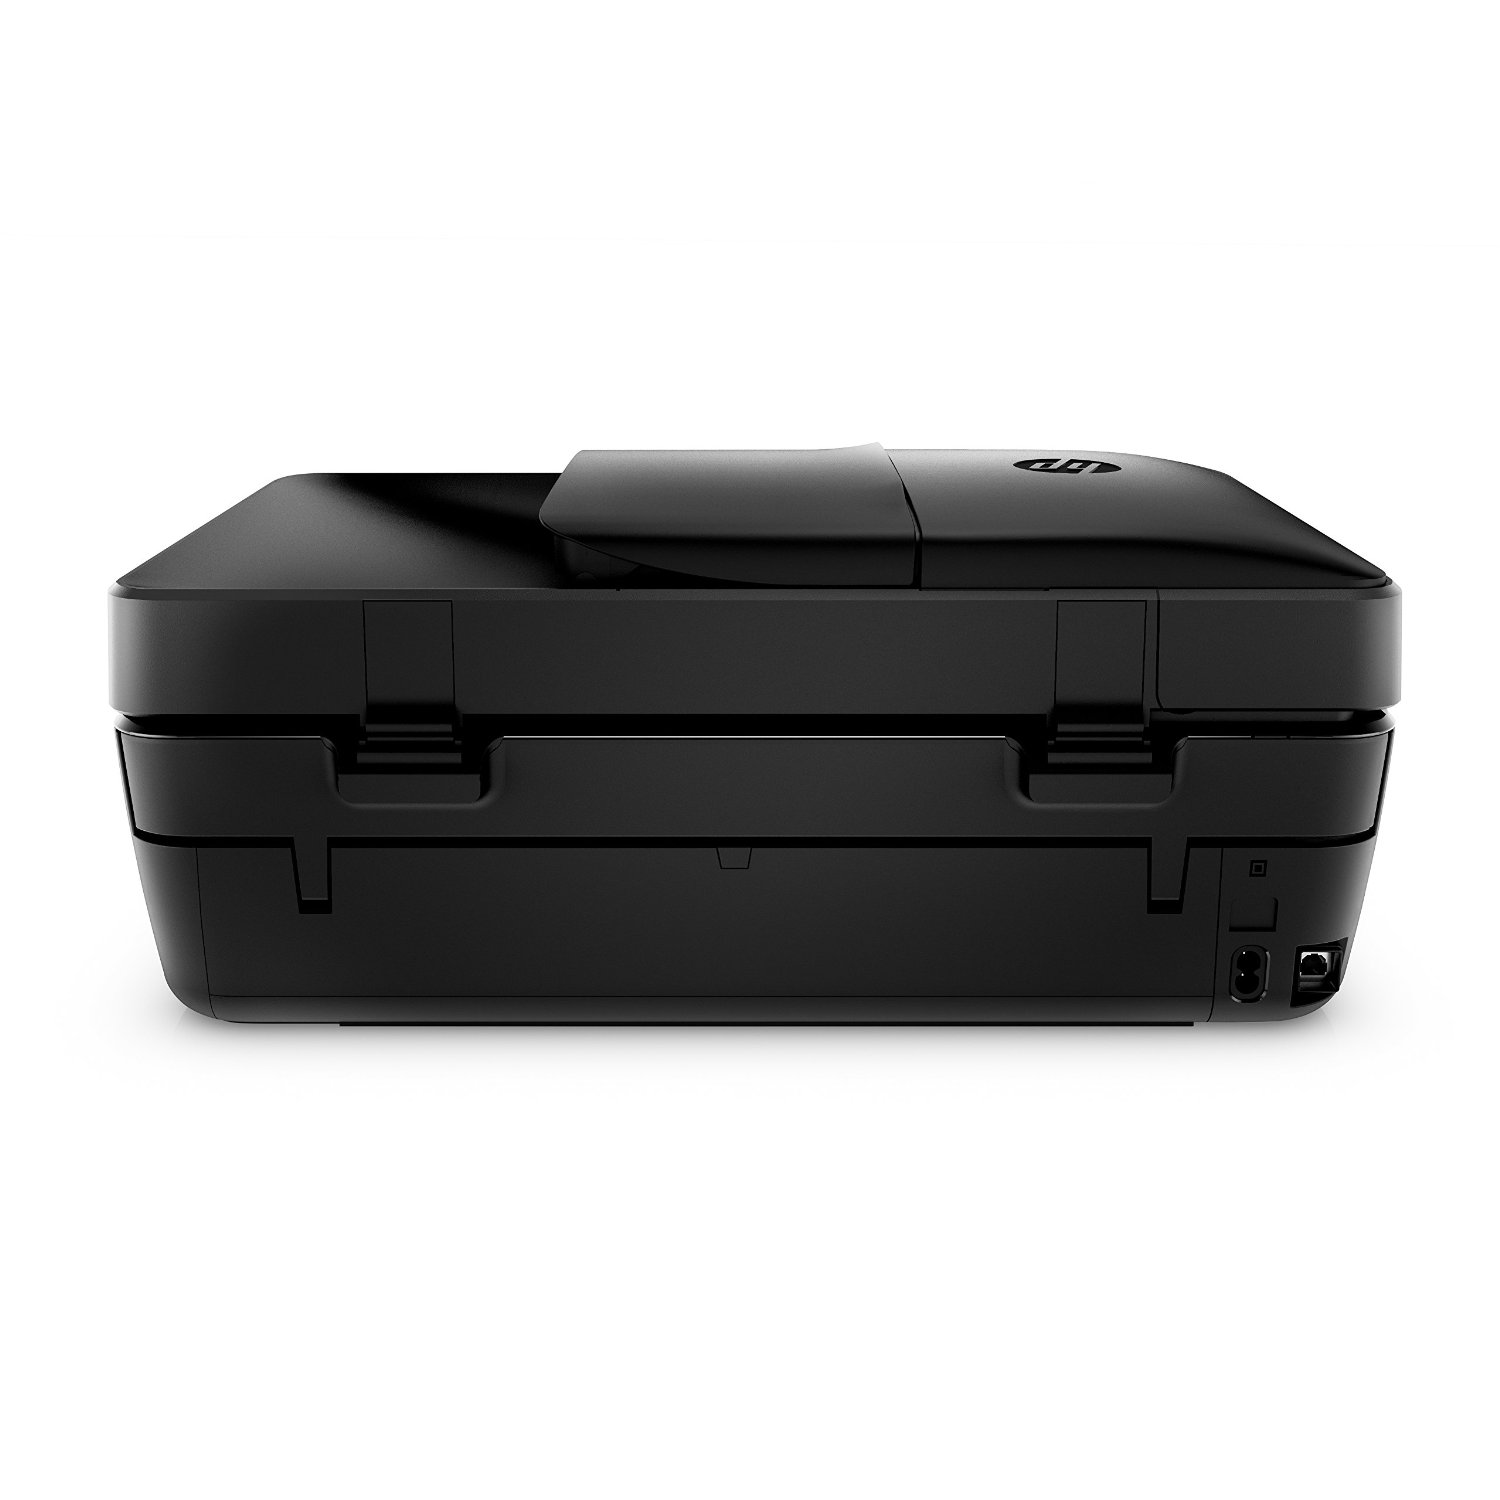 HP Officejet 4650 Wireless All-in-One Inkjet Printer